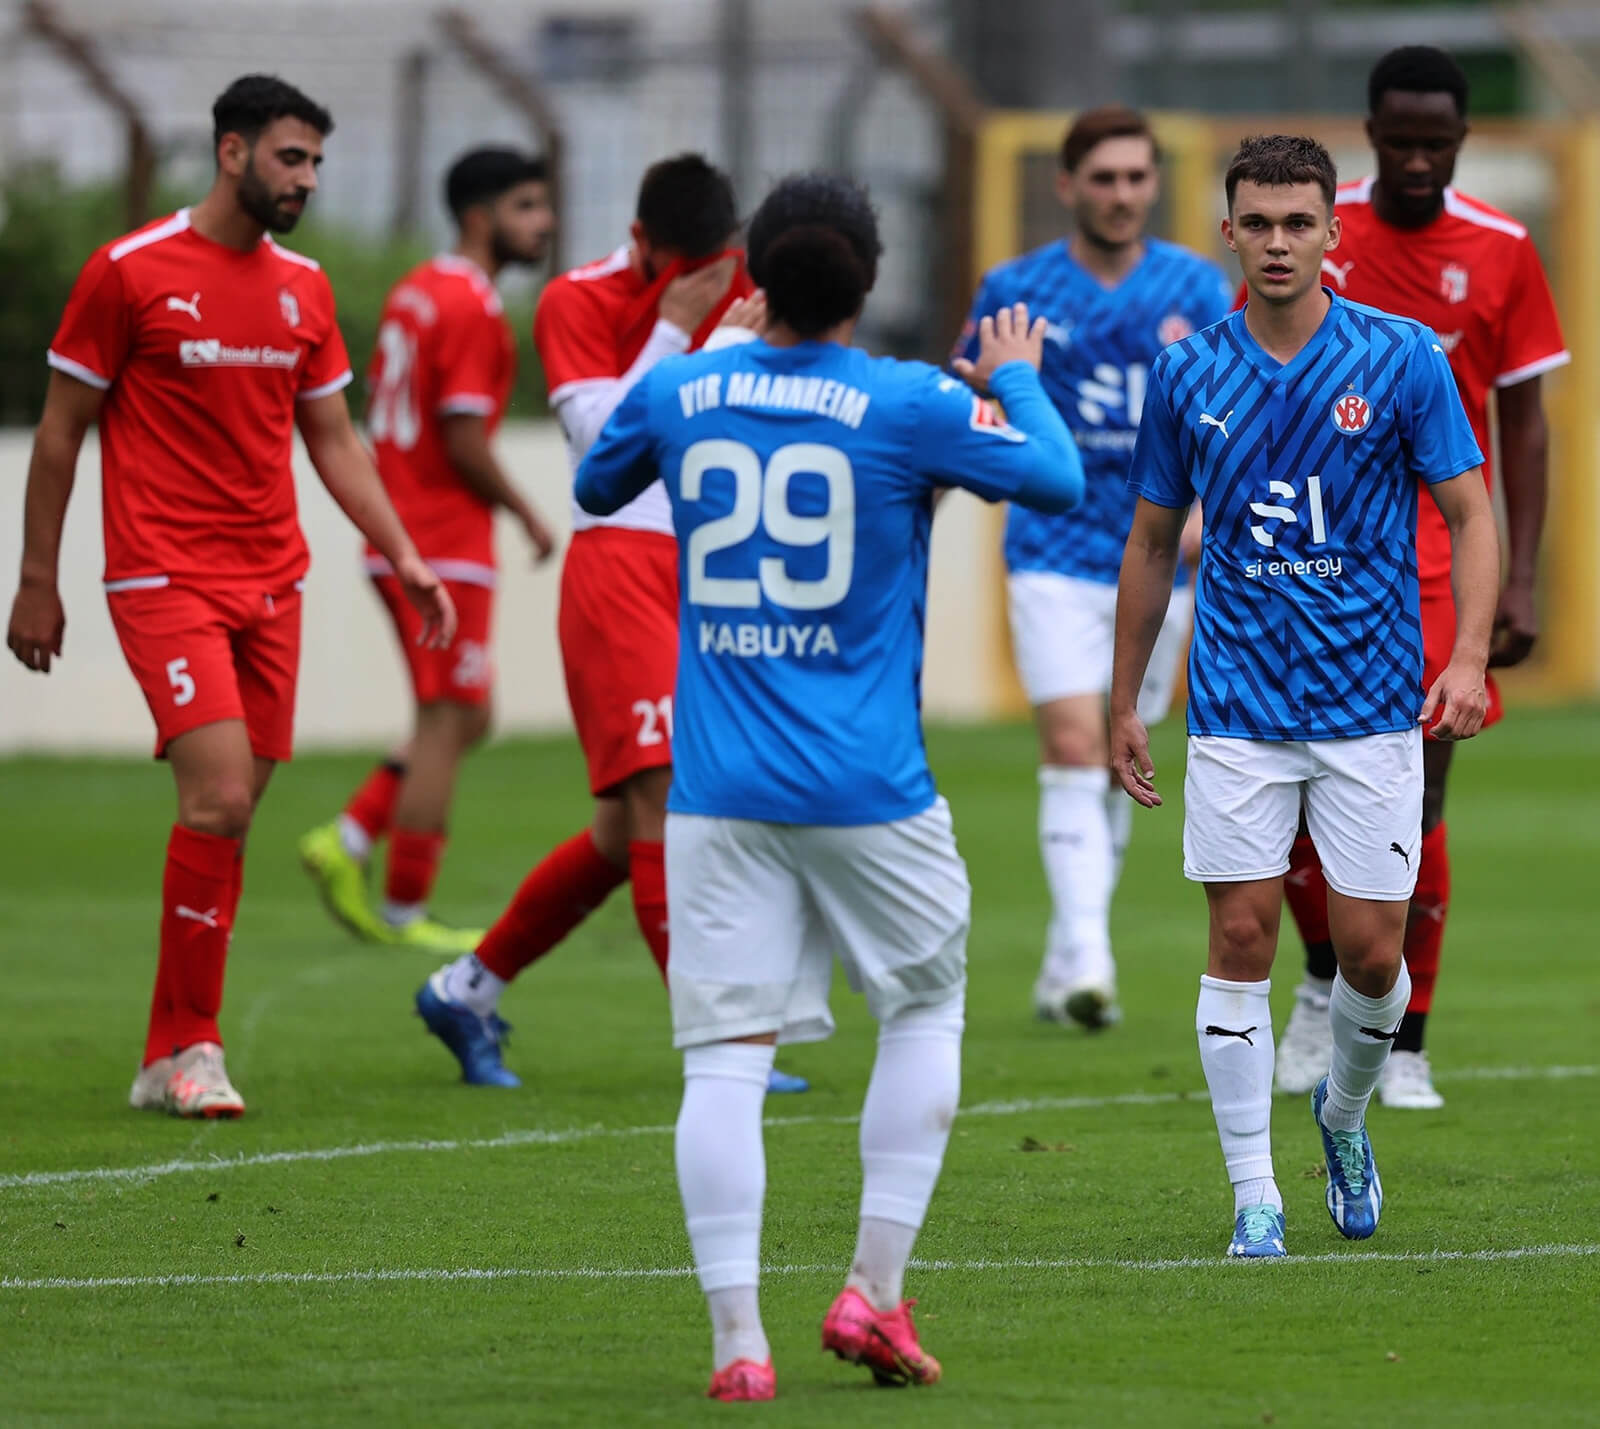 Deutlicher Testspielsieg ++ VfR Mannheim bezwingt FC Türkspor Mannheim mit 7:1 (6:0)